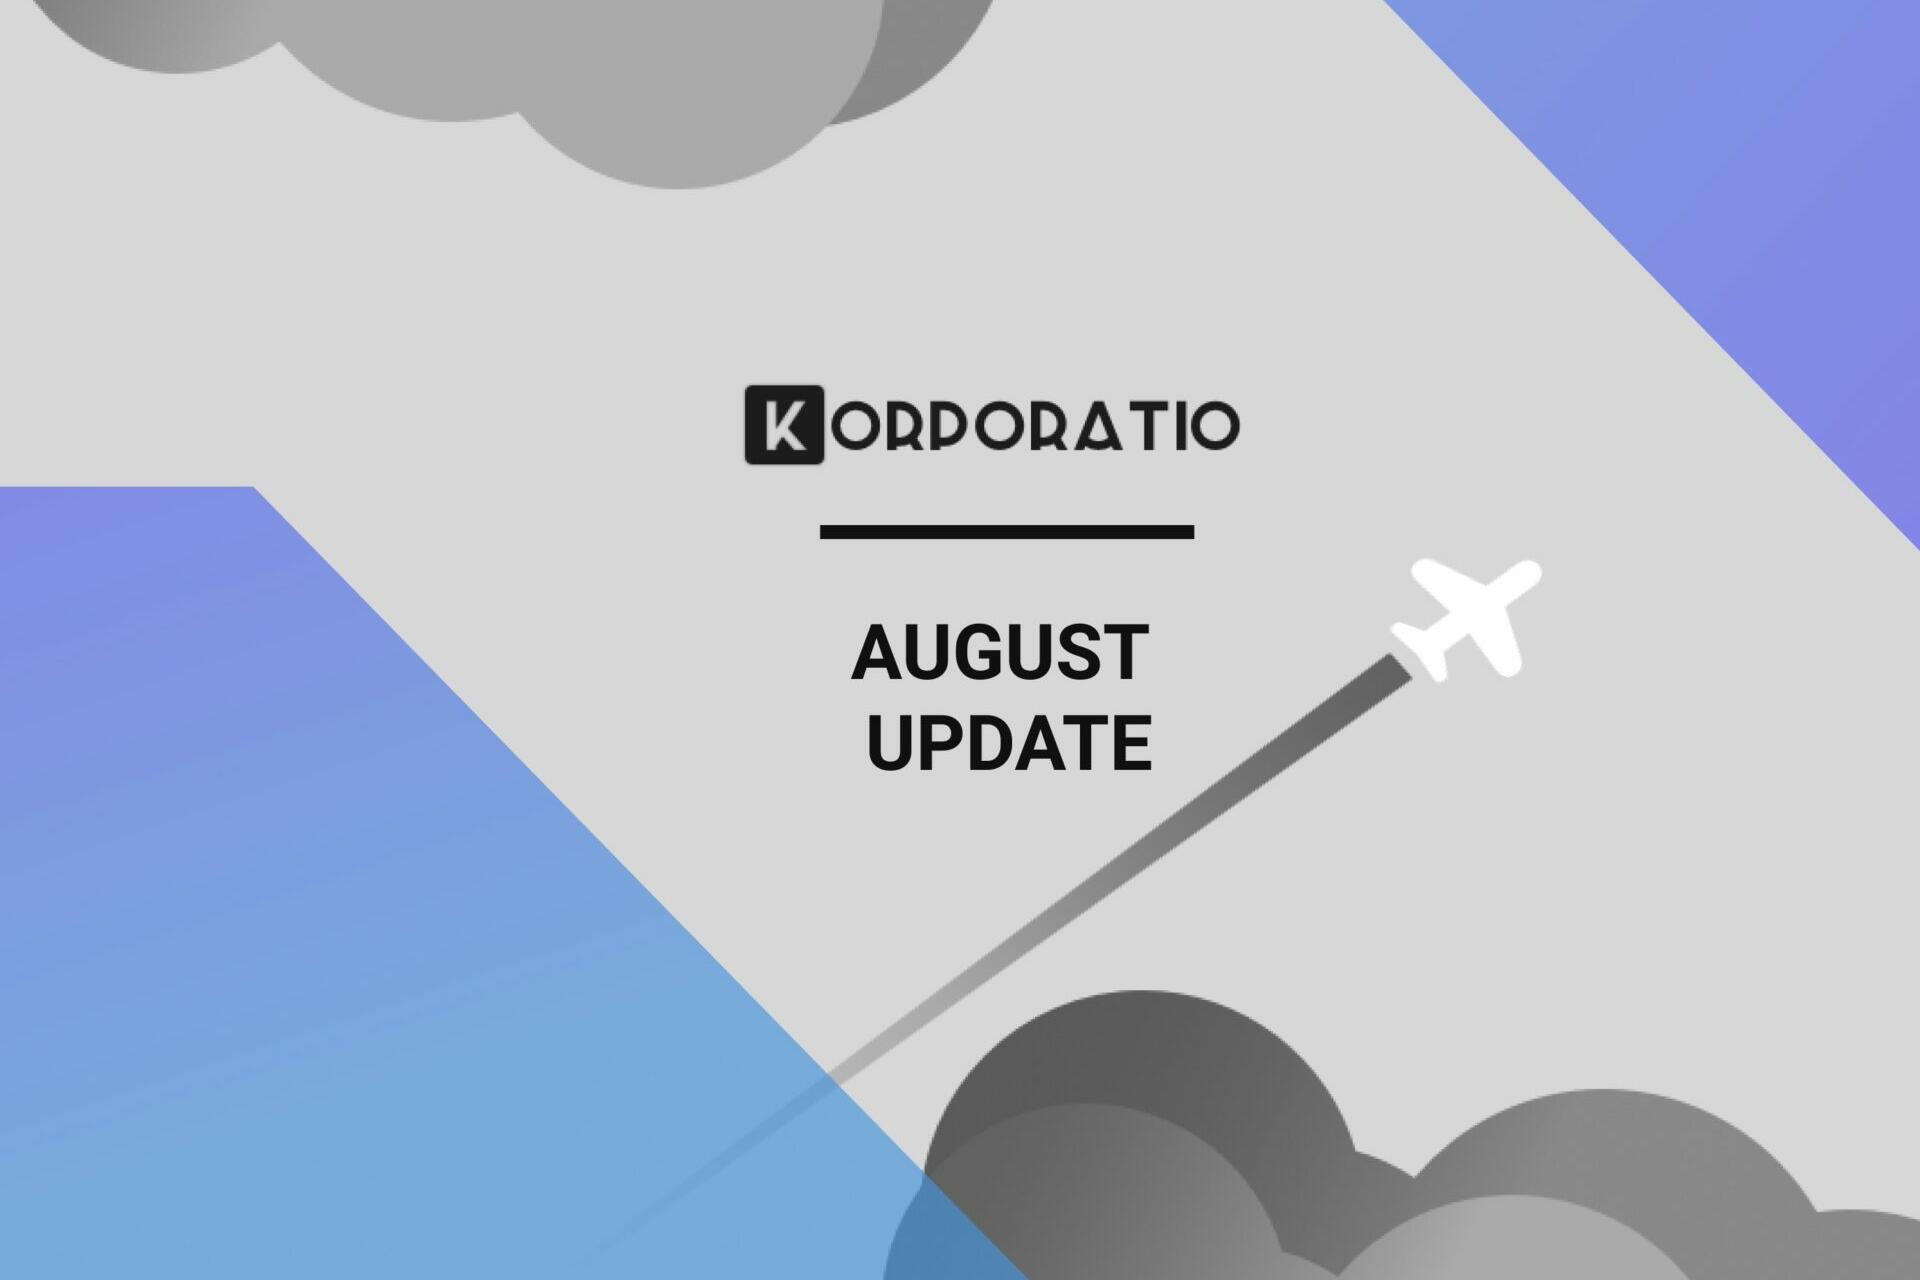 Korporatio august update